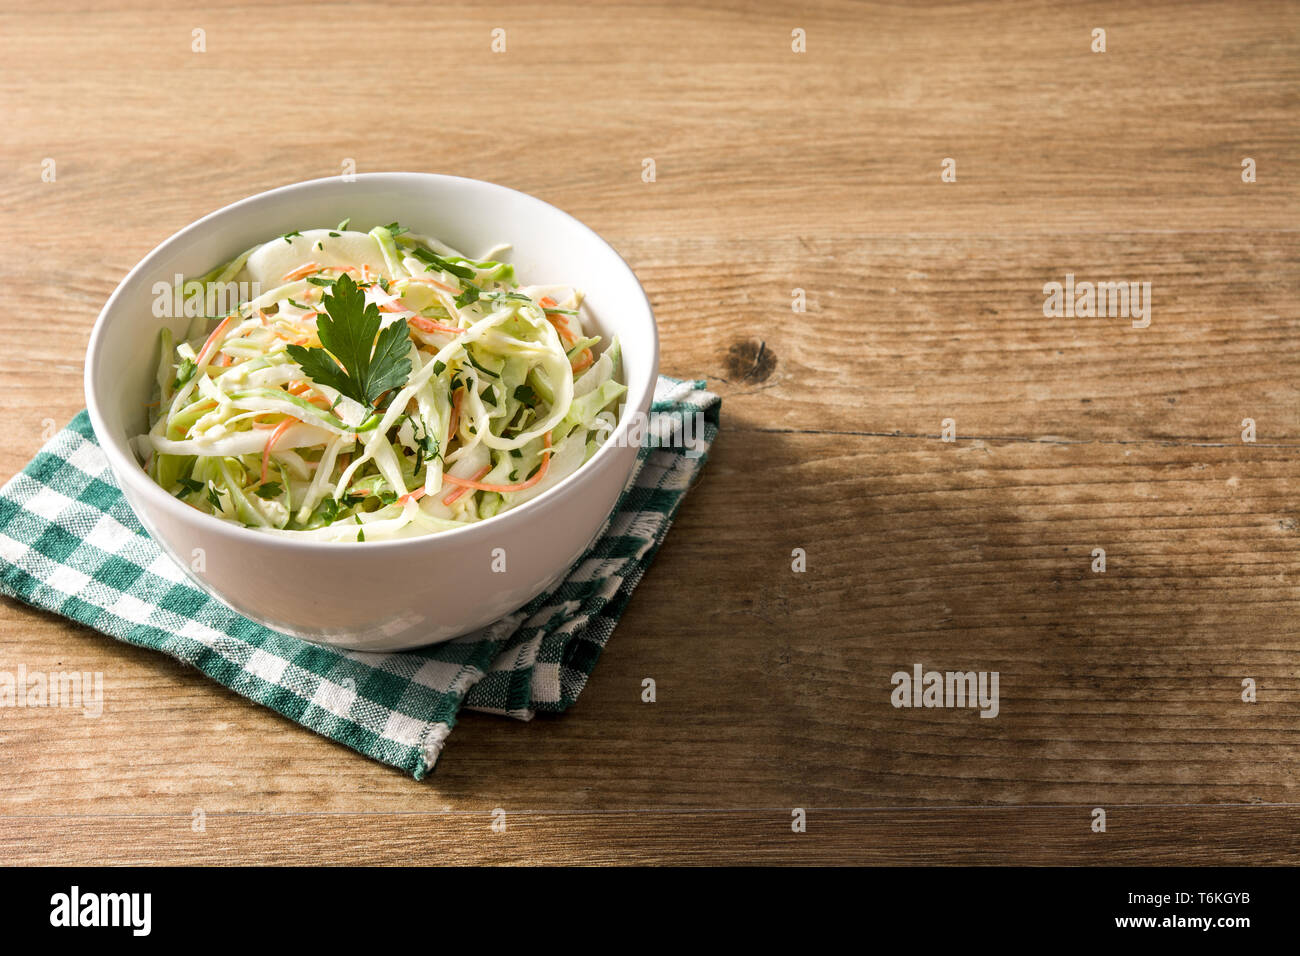 Krautsalat Salat in Weiß Schüssel auf hölzernen Tisch Stockfoto